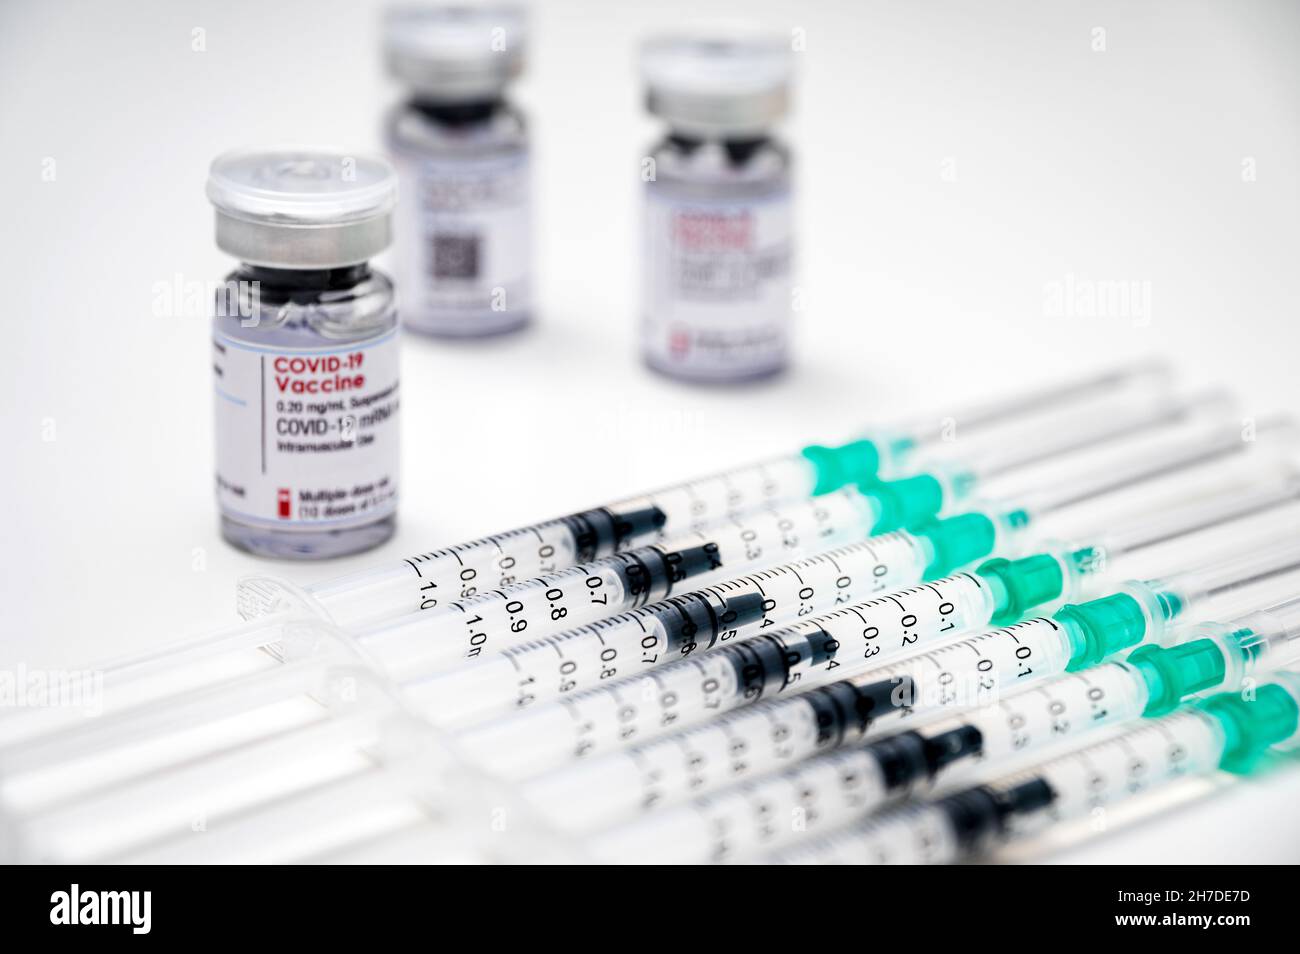 Vaccination contre le coronavirus du SRAS-COV-2 – seringues médicales, chacune avec une dose de vaccin COVID-19 et plusieurs flacons en verre à l'arrière-plan. Banque D'Images